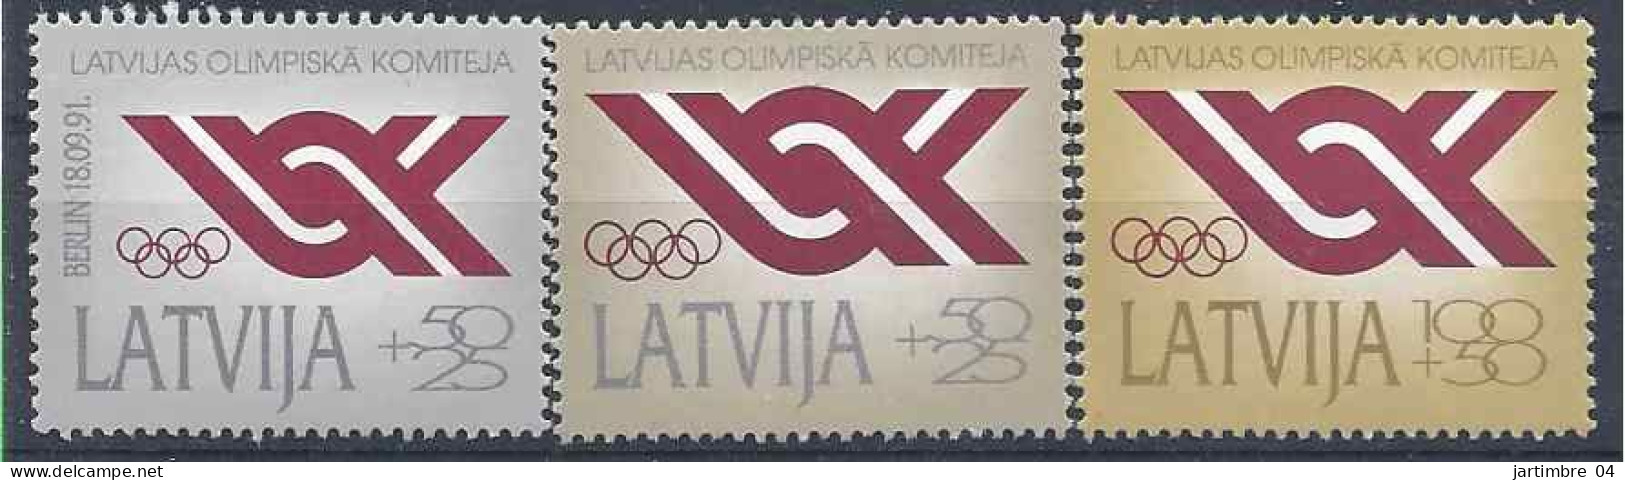 1991 LETTONIE 283-85** Comité Olympique - Latvia